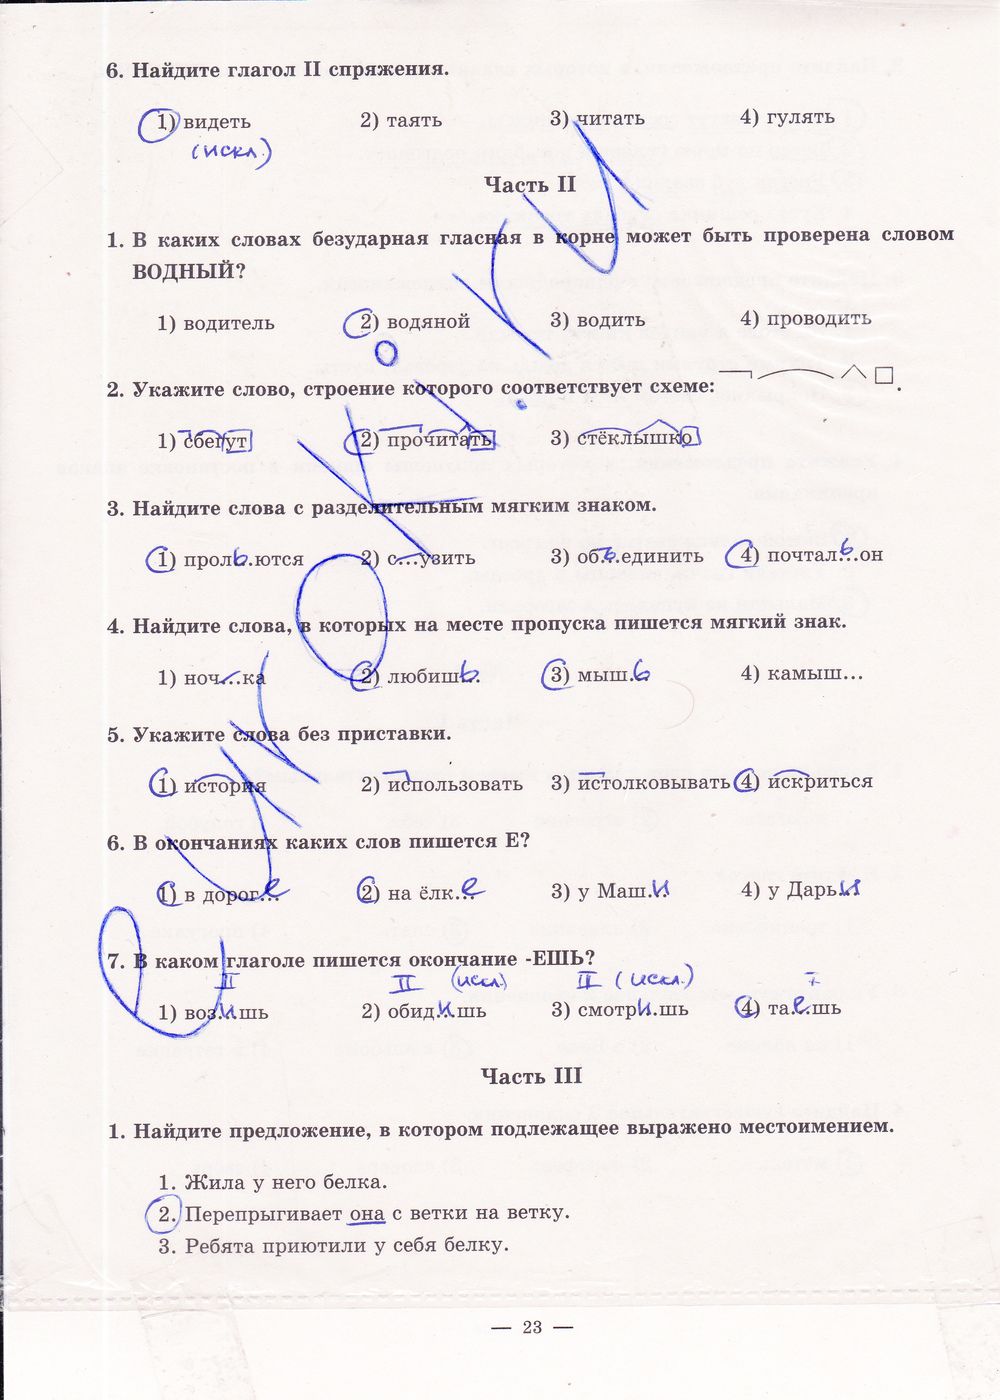 ГДЗ Русский язык 5 класс - стр. 23